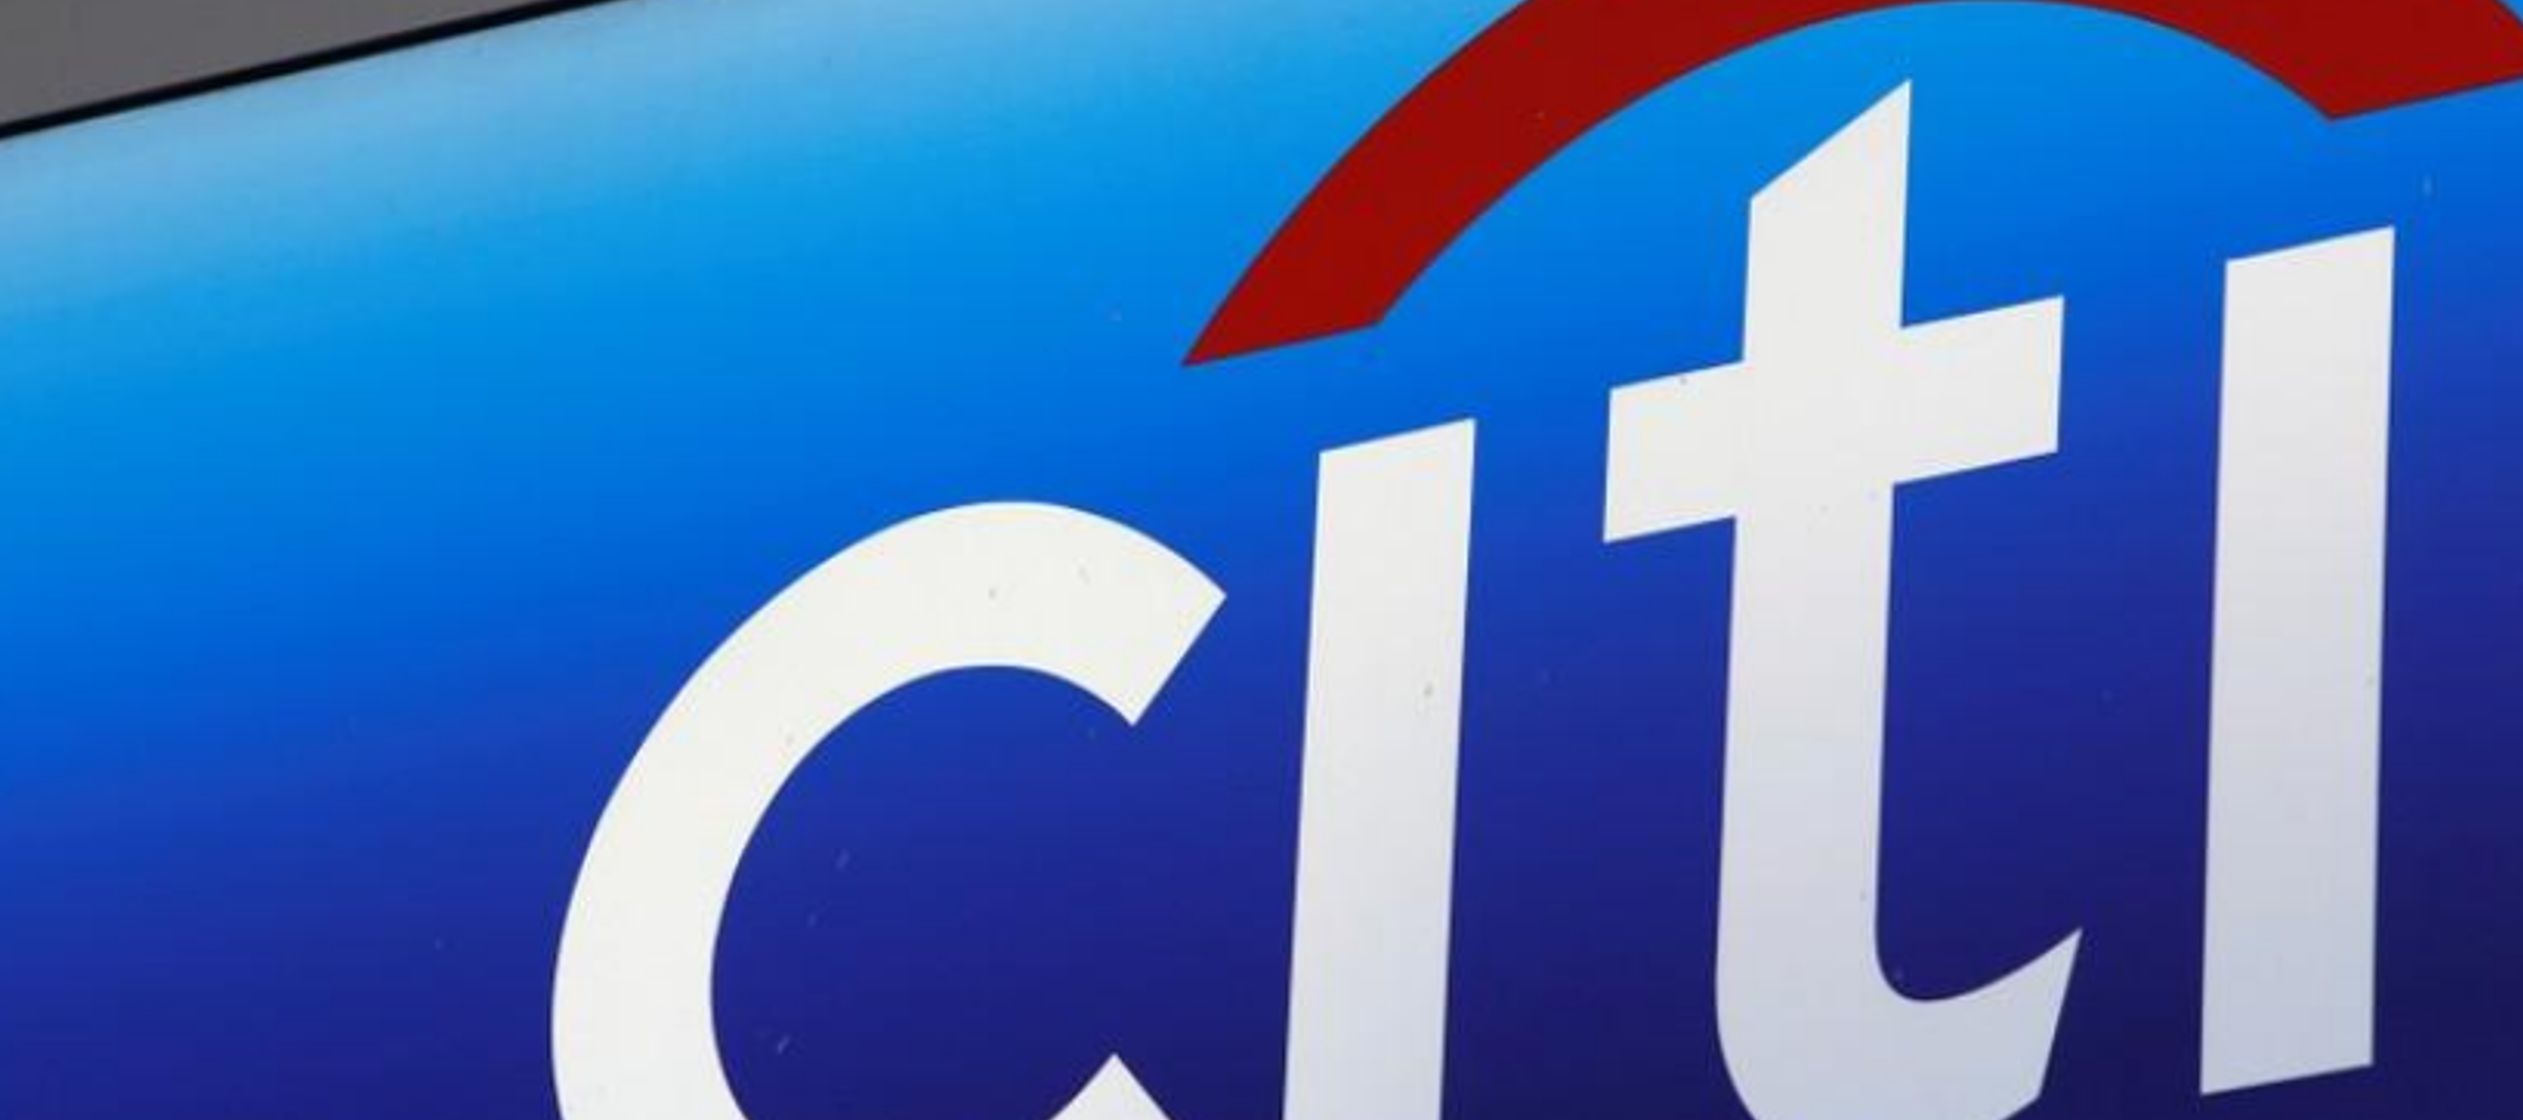 Citi ha estado invirtiendo en capacidad digital para tratar de ganar depósitos a nivel...